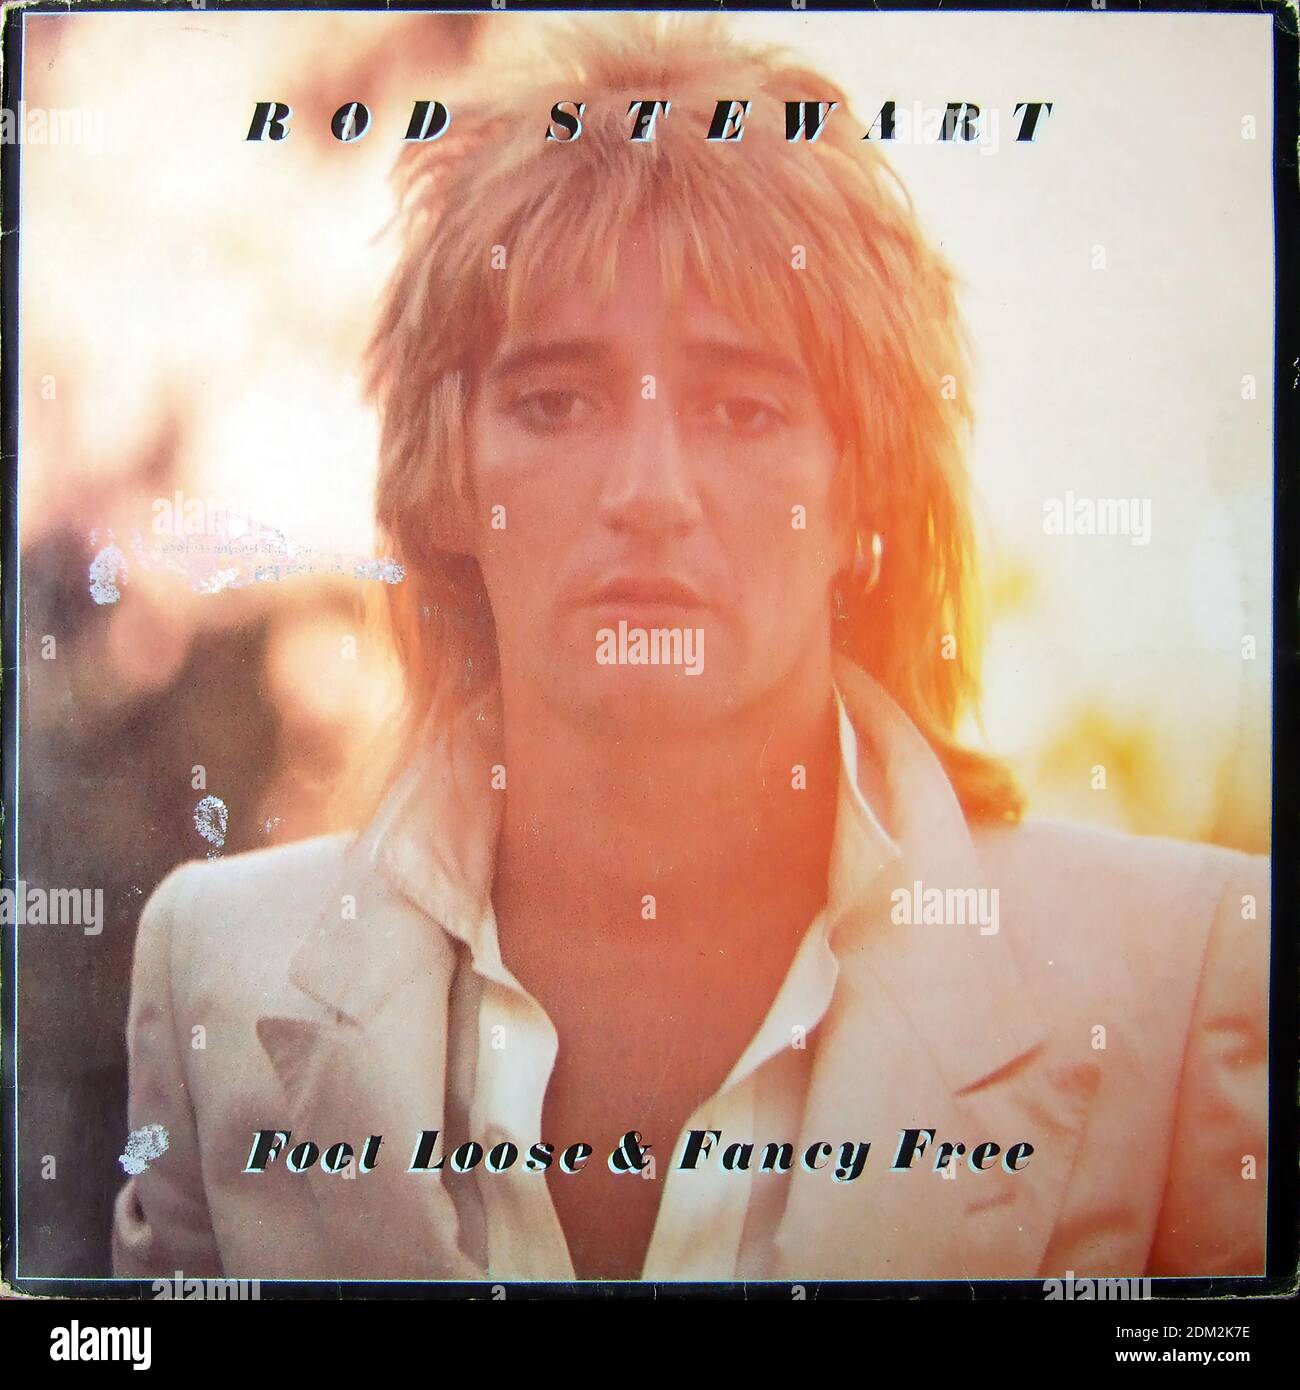 Bombardeo Superar Radar Rod Stewart - Footloose & Fancy Free - Vintage vinilo portada del álbum  Fotografía de stock - Alamy